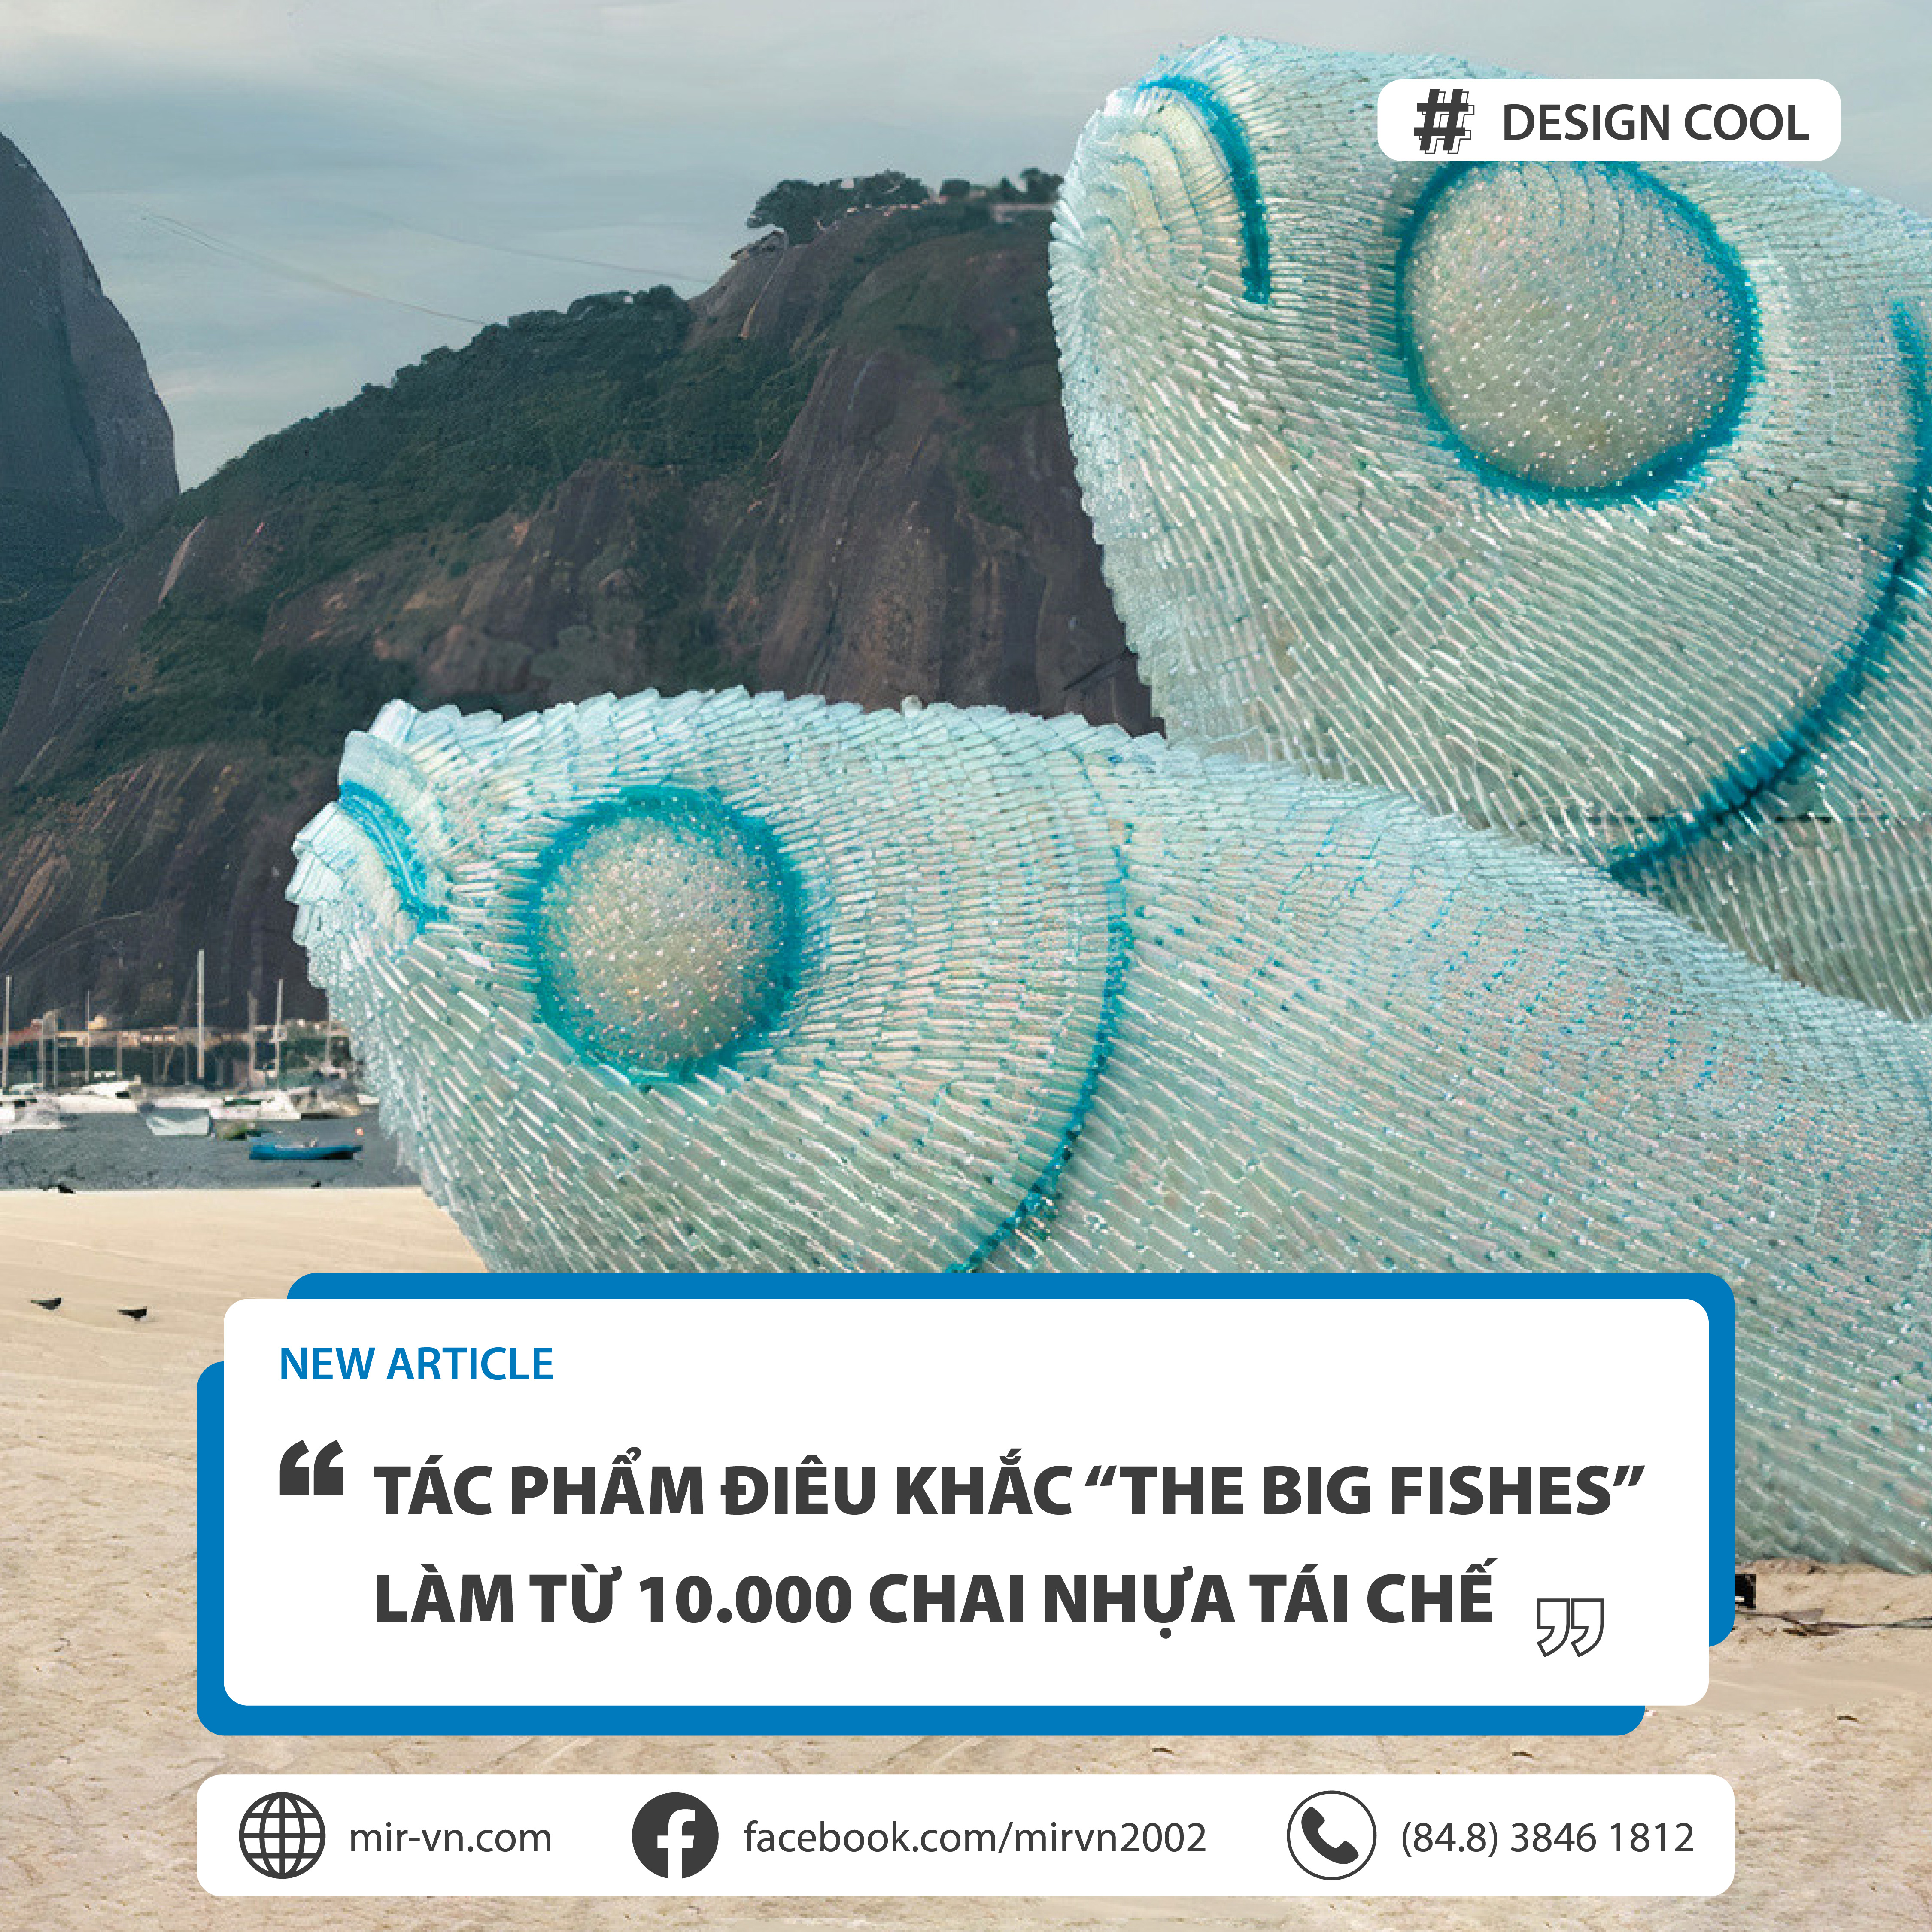 [MAYBE YOU MISSED THIS COOL] _ TÁC PHẨM ĐIÊU KHẮC “THE BIG FISHES” LÀM TỪ 10.000 CHAI NHỰA TÁI CHẾ